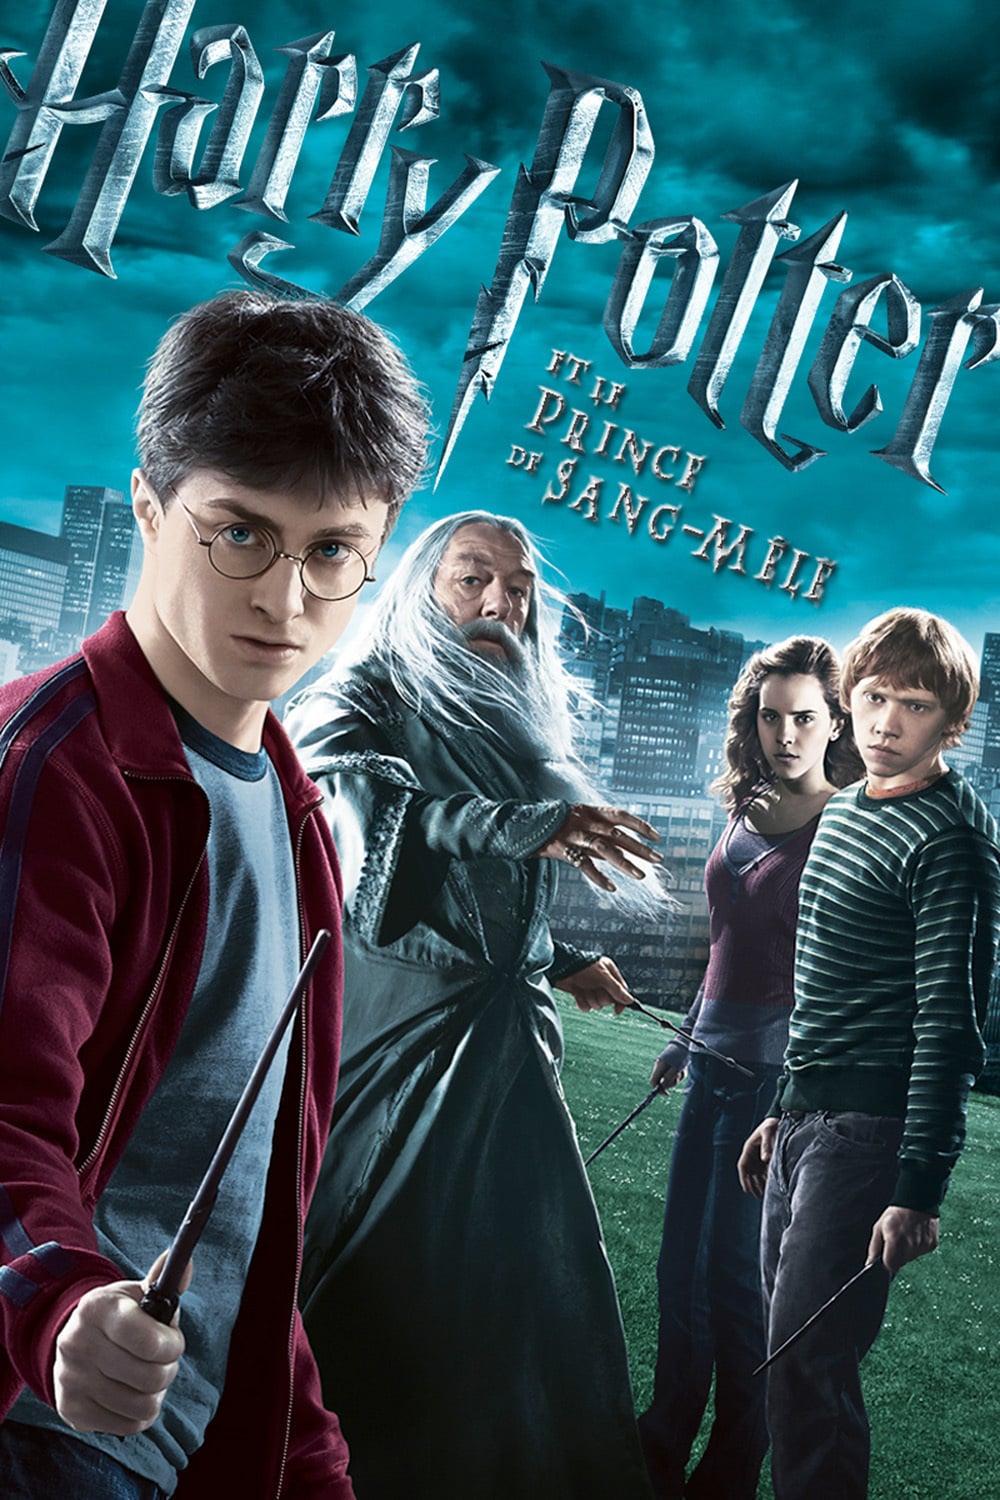 Affiche du film "Harry Potter et le Prince de sang-mêlé"